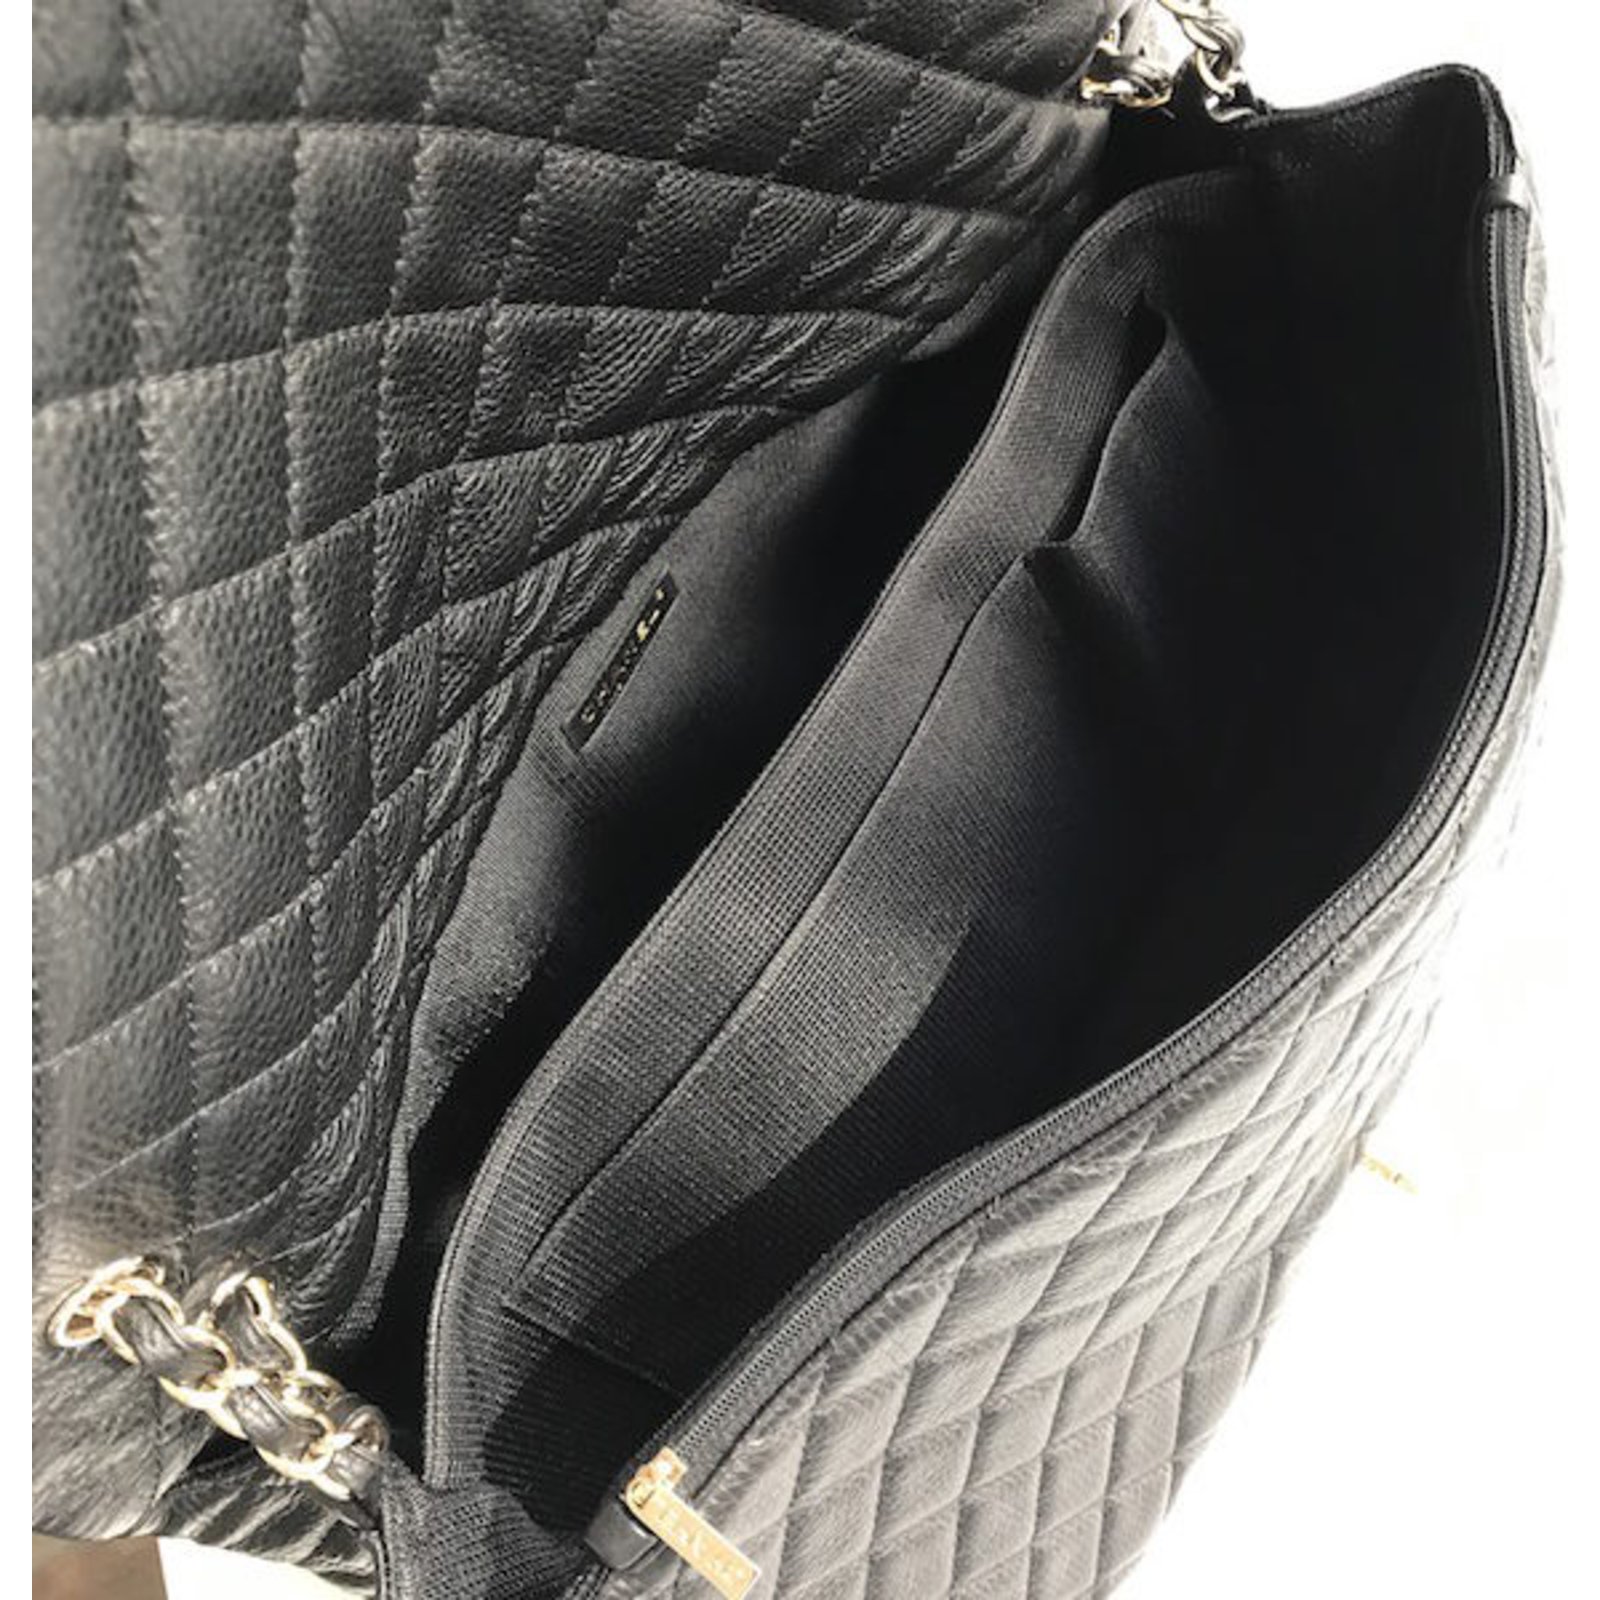 Chanel gold flap bag - Gem